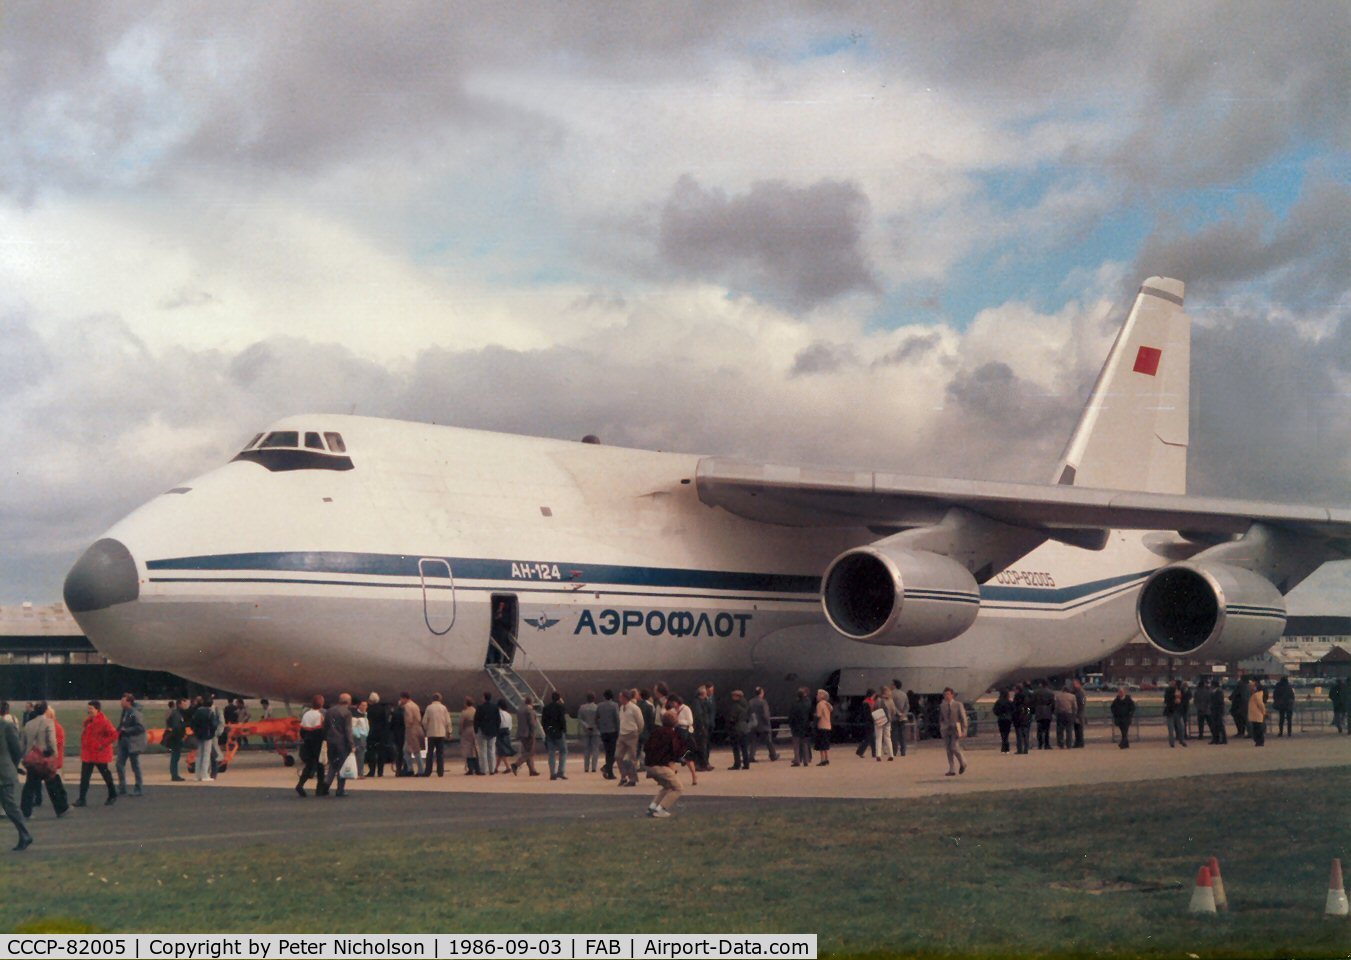 CCCP-82005, 1985 Antonov An-124-100 Ruslan C/N 9773054516003/0107, Antonov An-24 Condor of Aeroflot on display at the 1986 Farnborough Airshow.